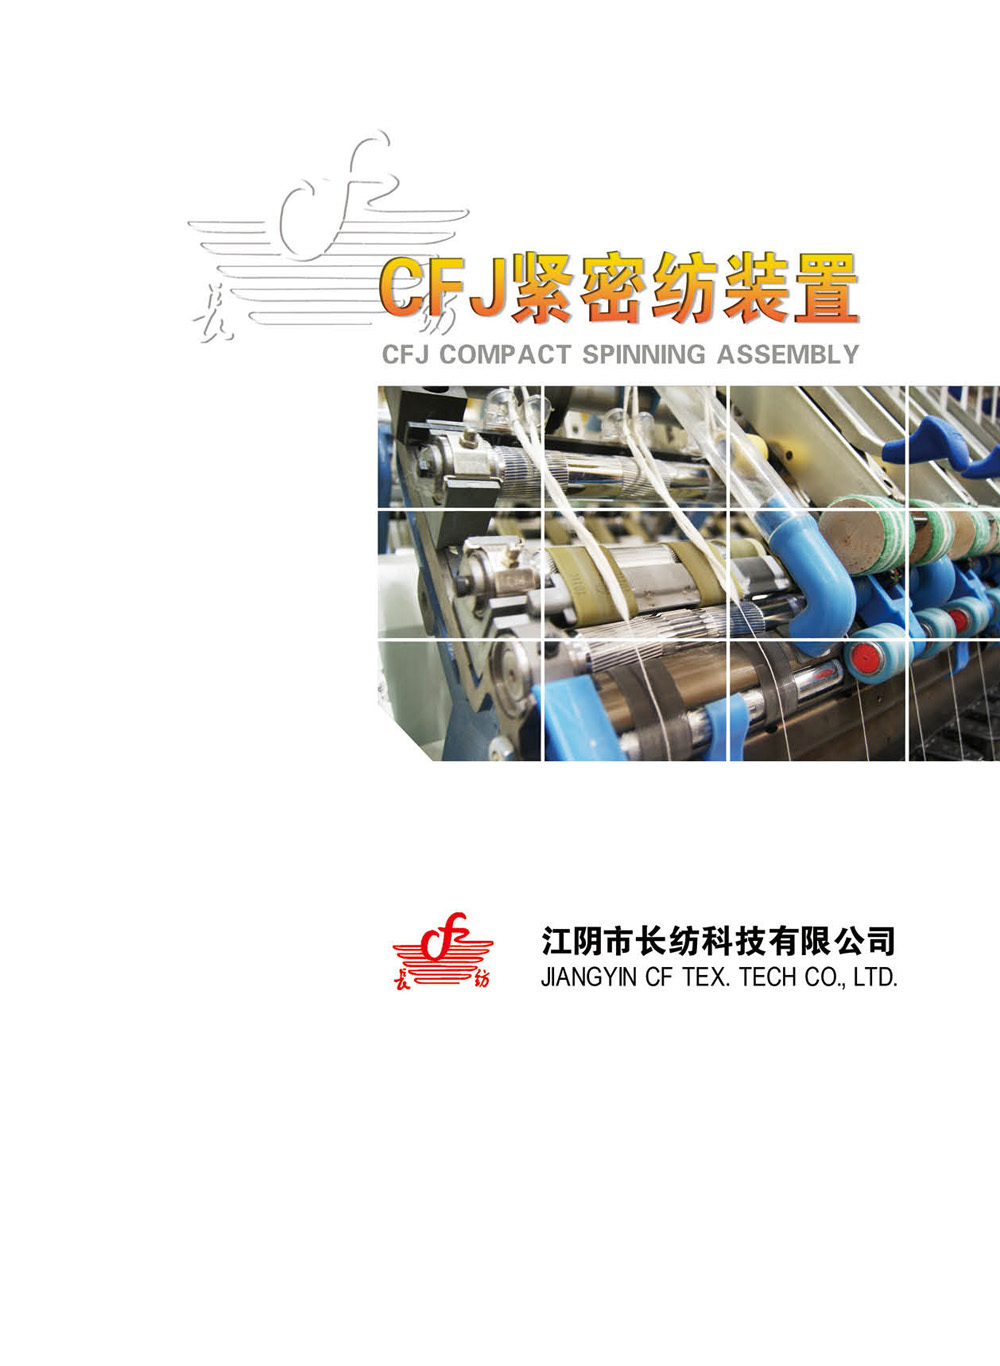 江阴市长纺科技有限公司-CFJ紧密纺装置